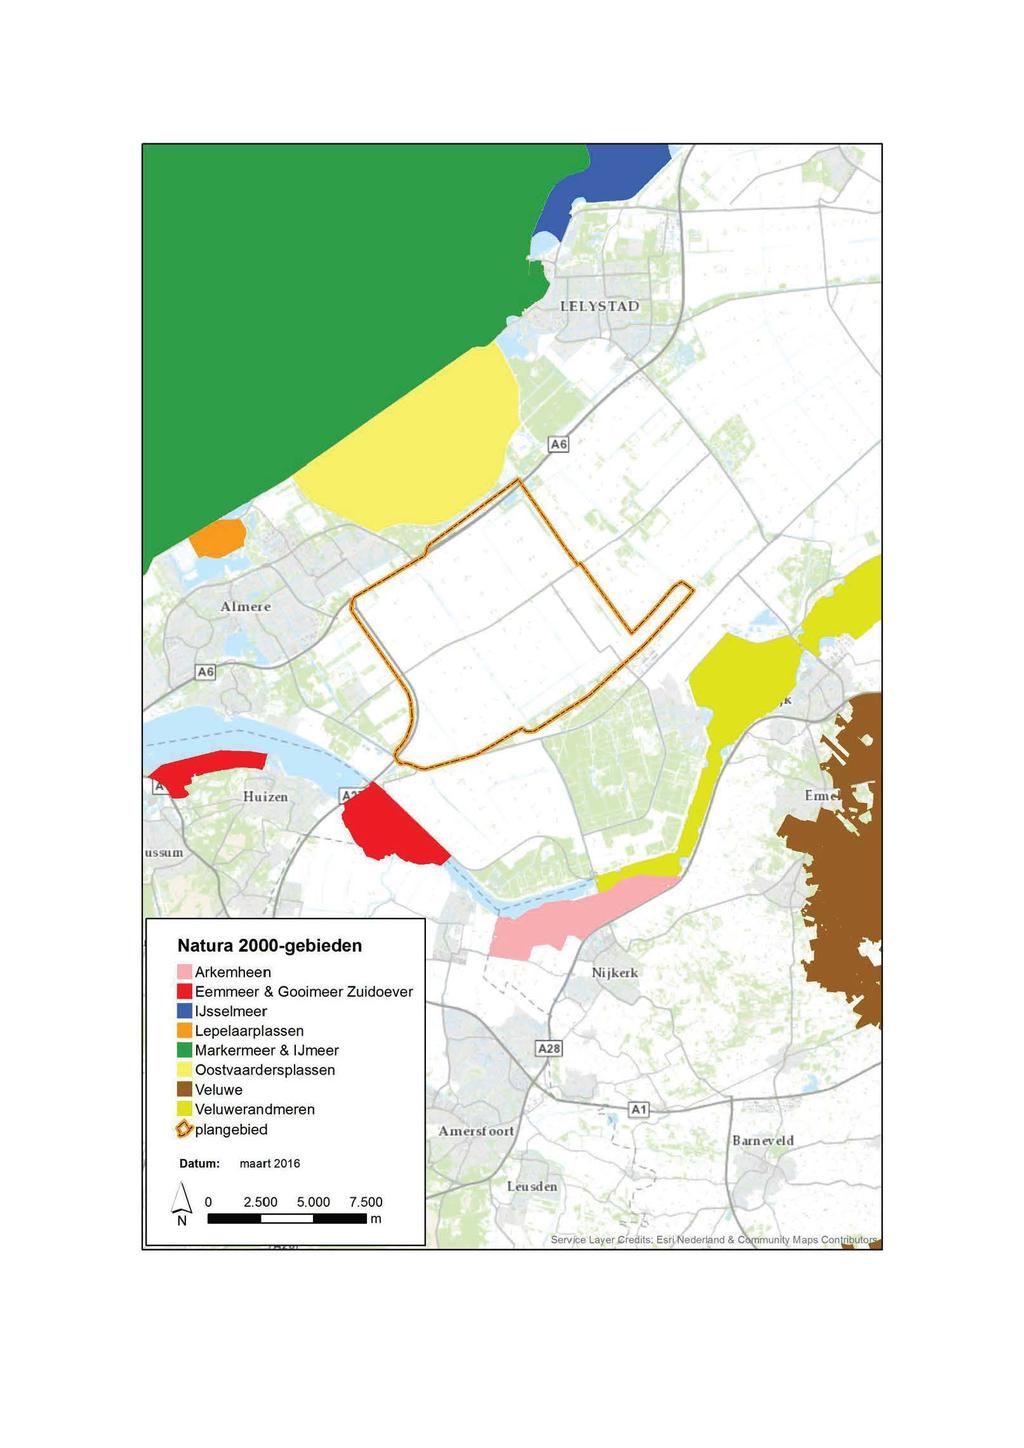 Figuur 5.6 Natura 2000-gebieden in de directe omgeving van Windpark Zeewolde / Natura 2000-gebieden Arkemheen Eemmeer & Gooimeer Zuidoever.